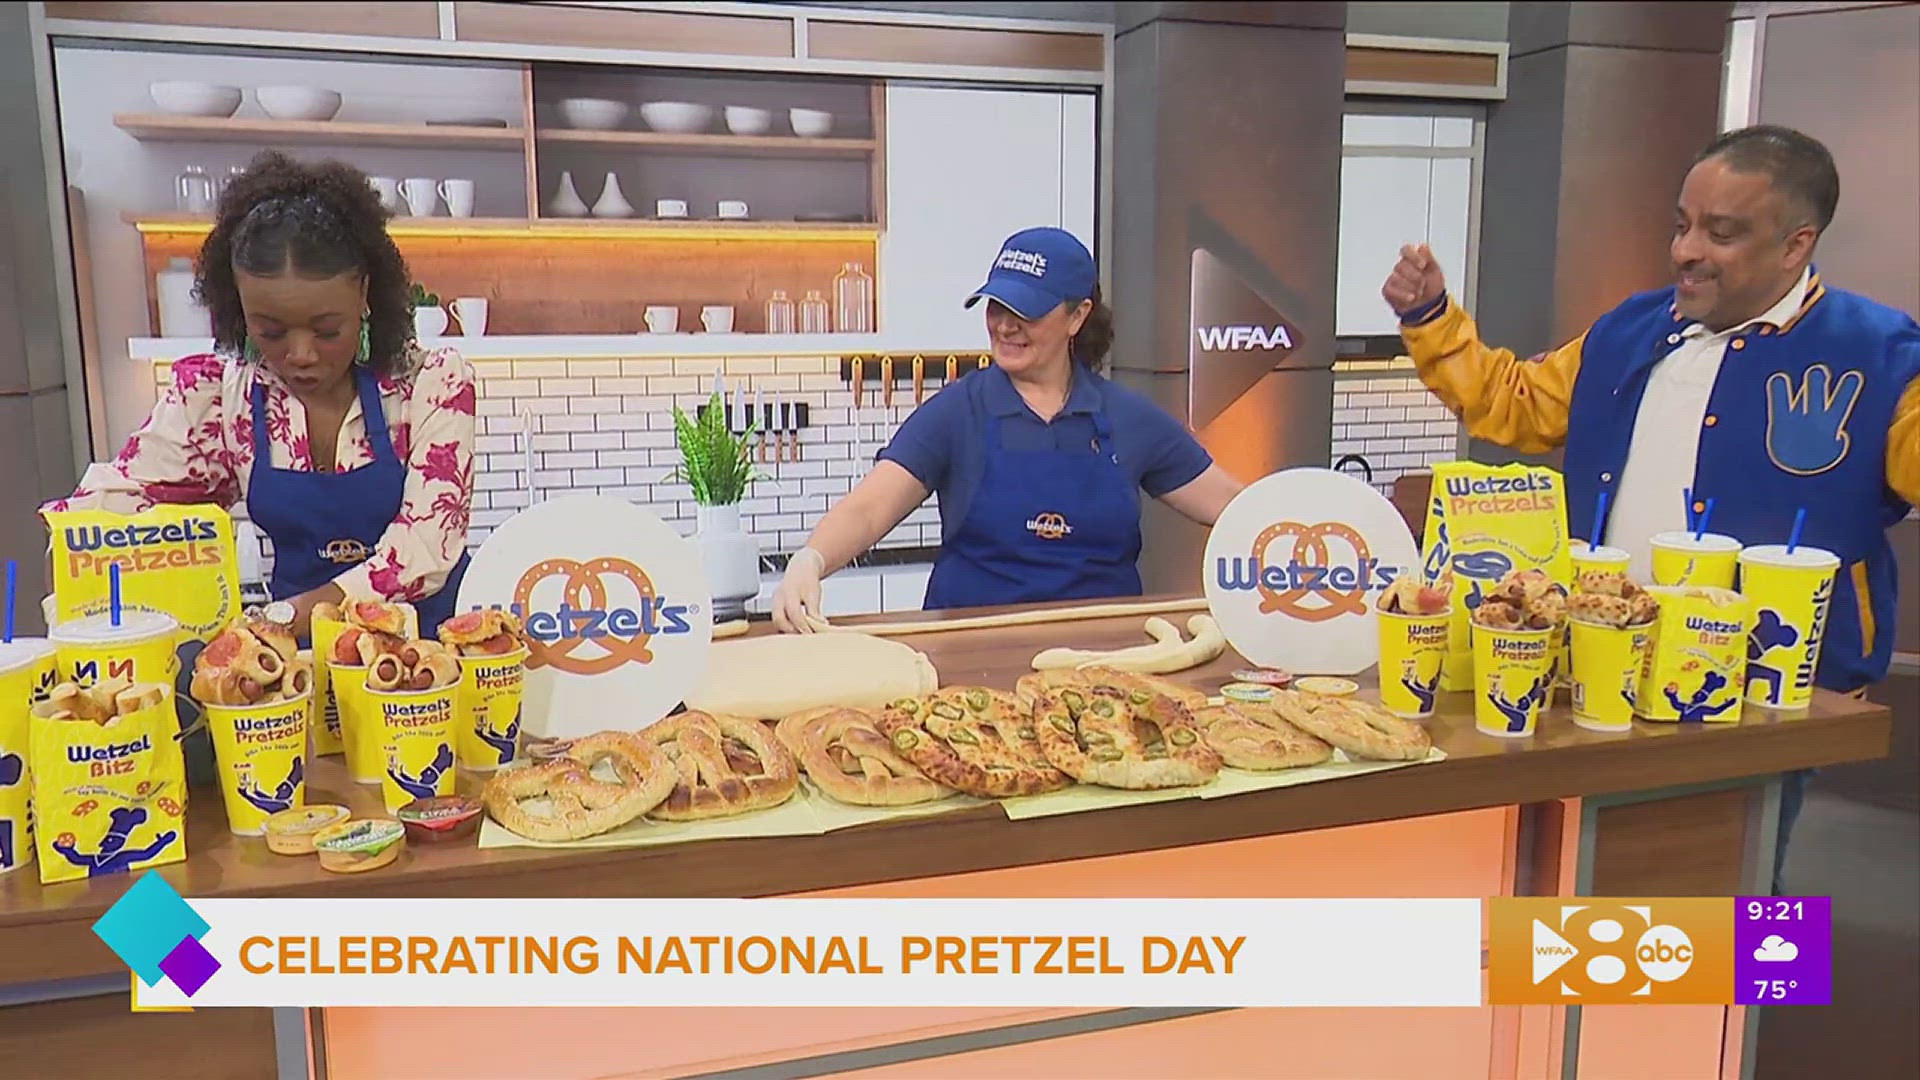 Wetzel's Pretzels explains how you can get a free original pretzel and shares the art of pretzel making.